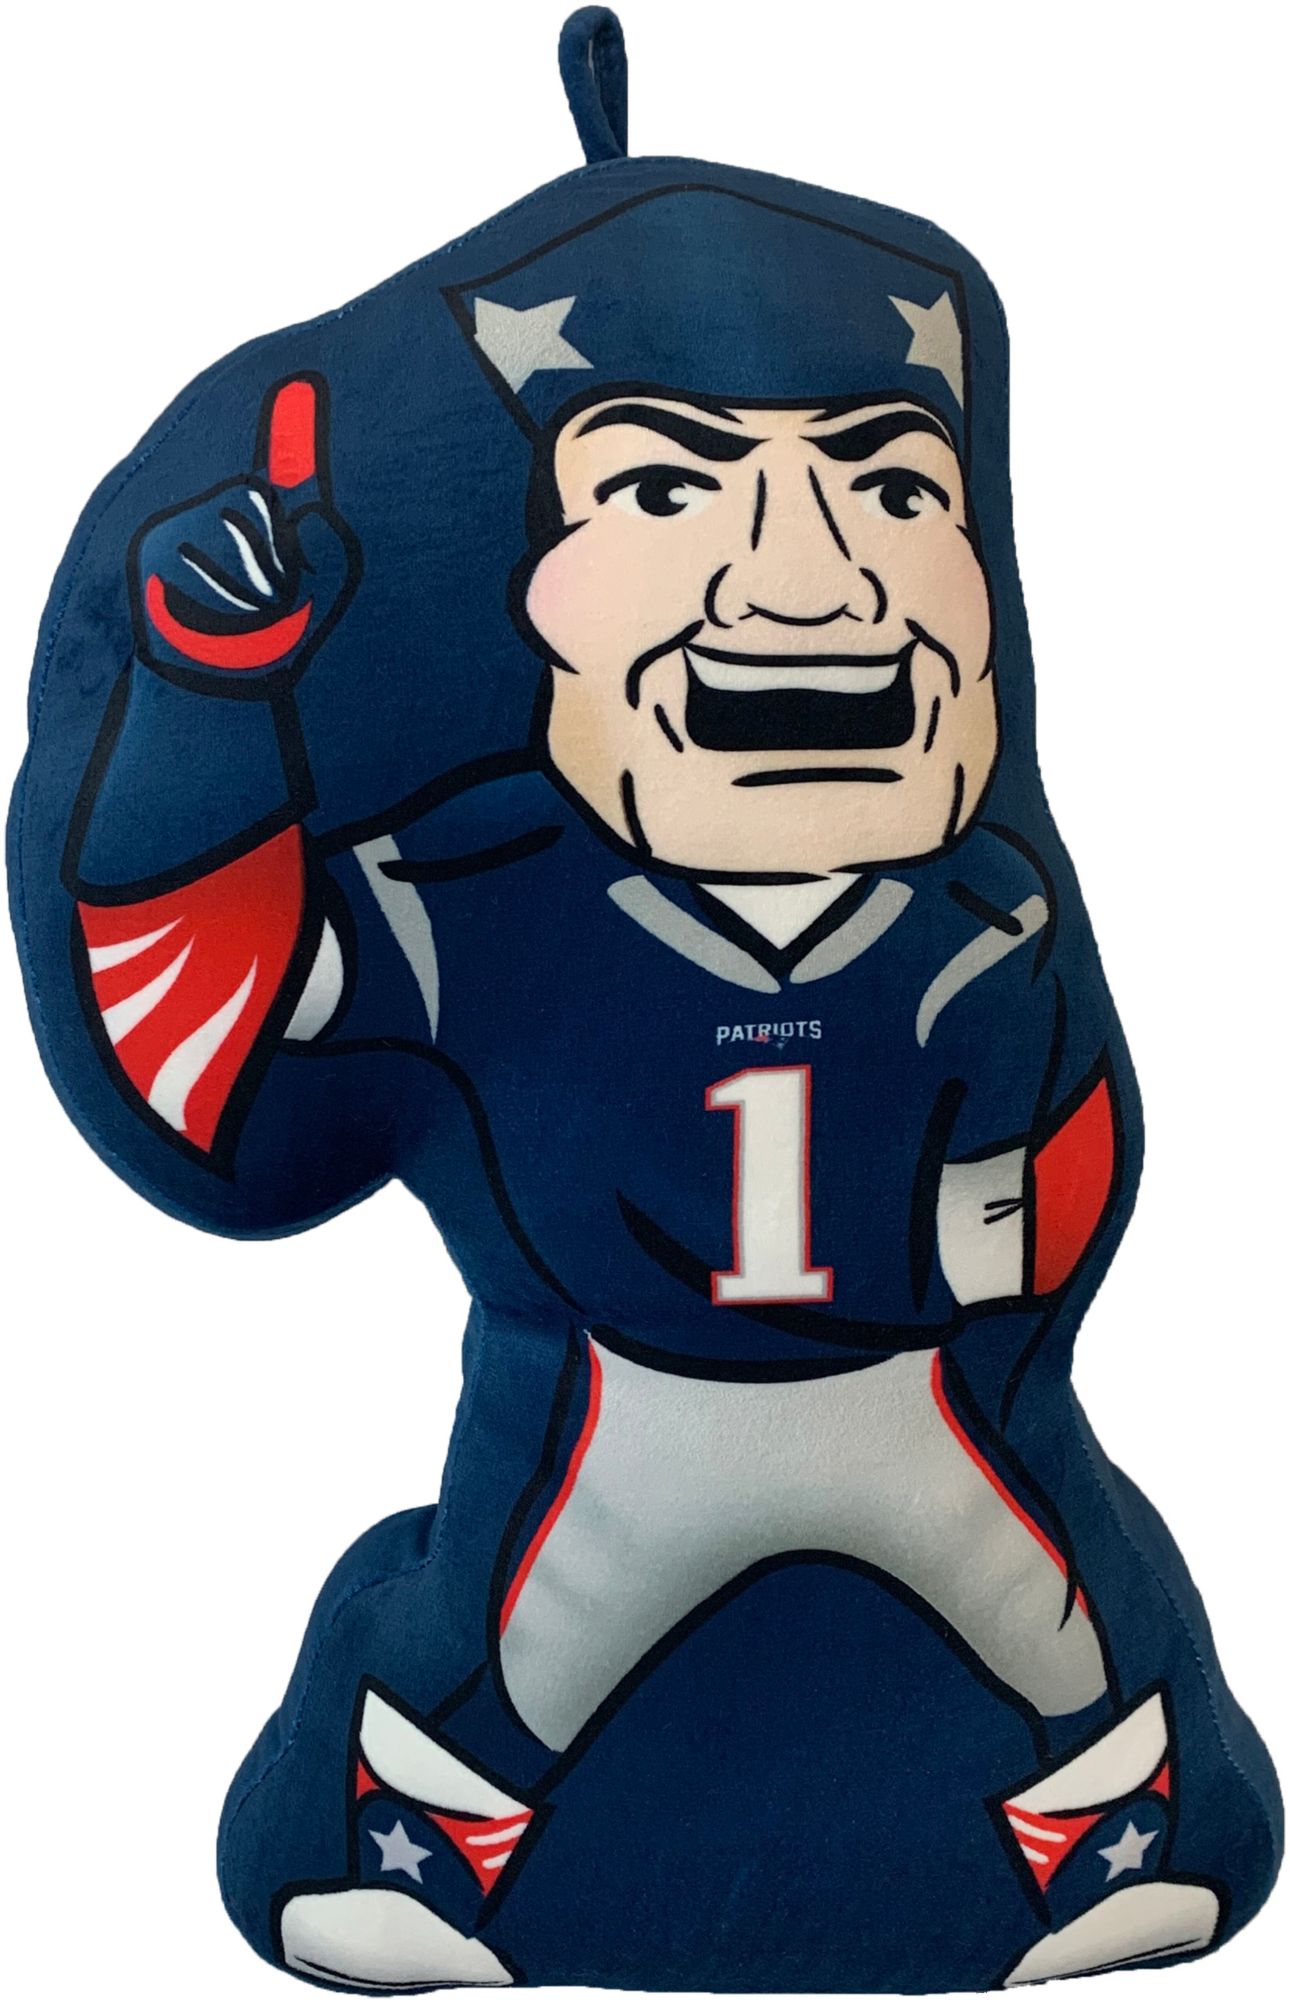 Pegasus Sports New England Patriots Mascot Pillow